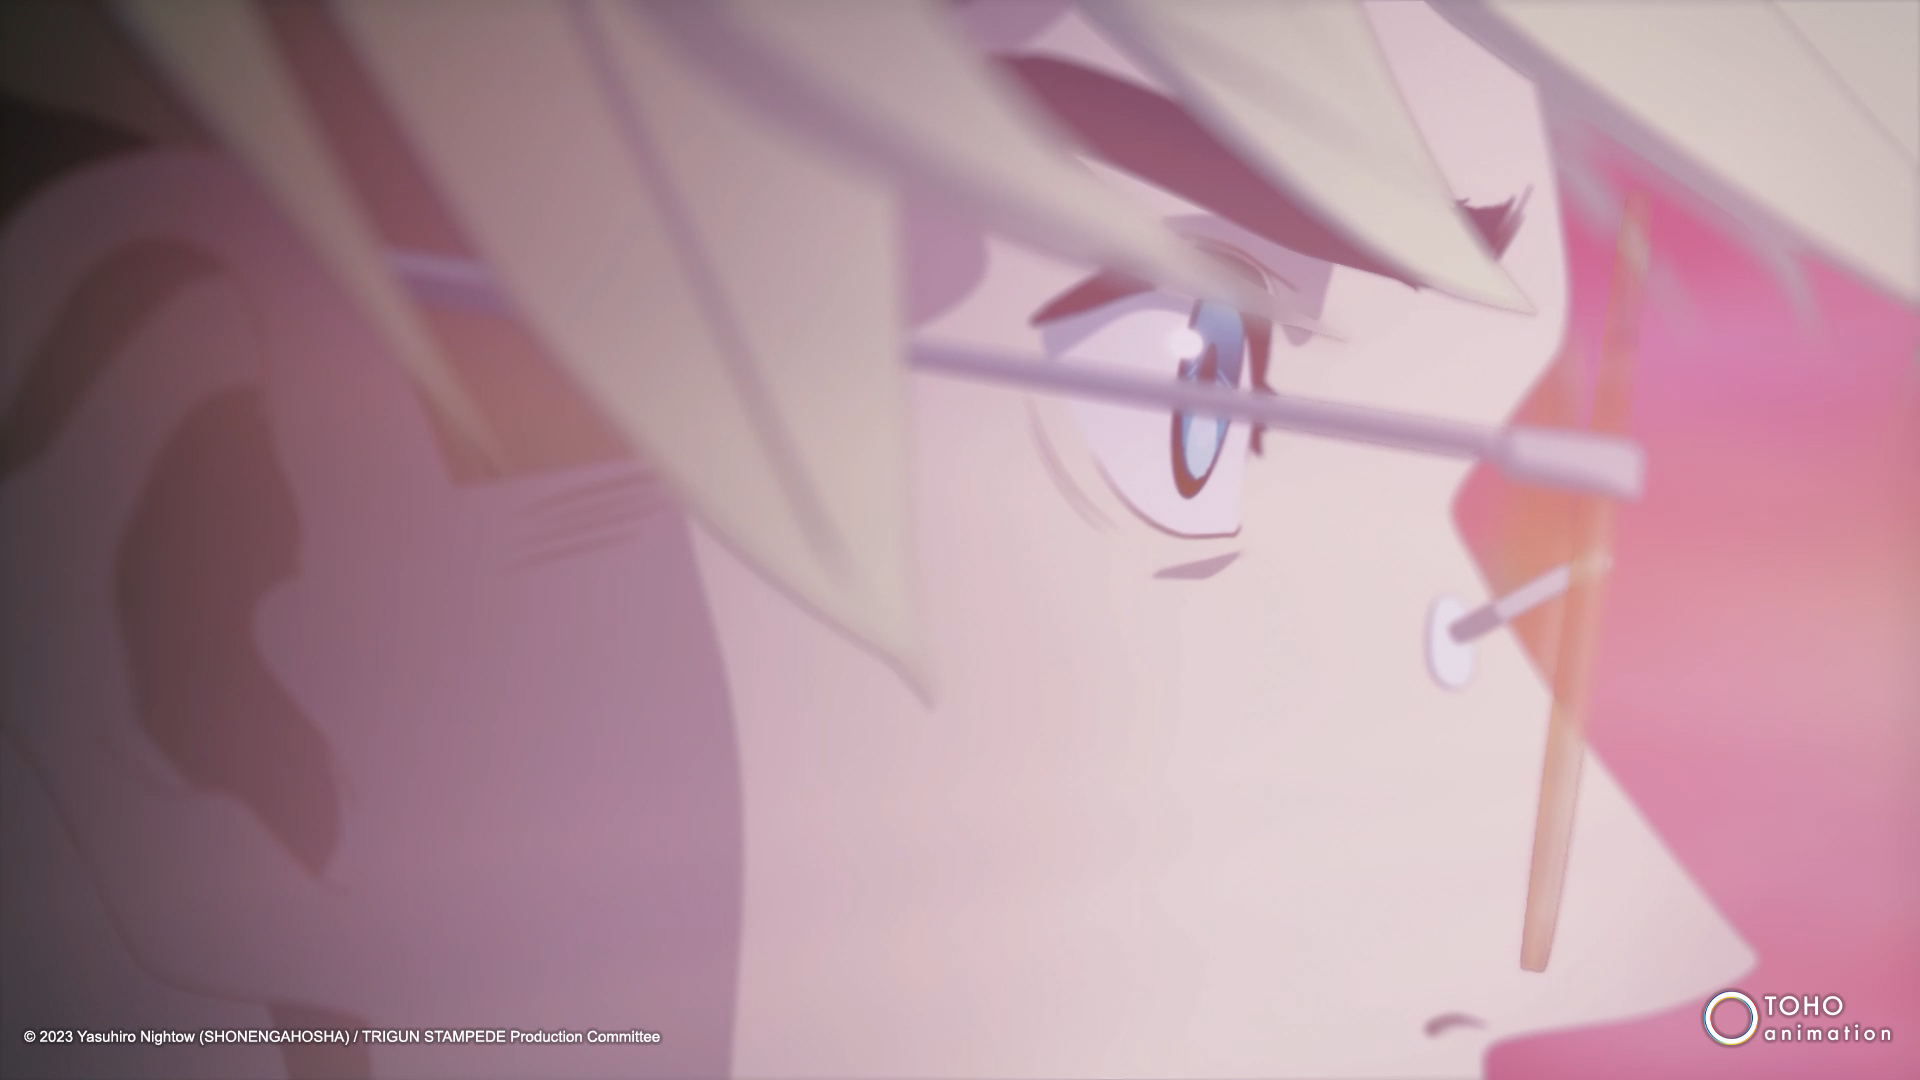 #„Final Phase“ von TRIGUN STAMPEDE Anime offiziell angekündigt